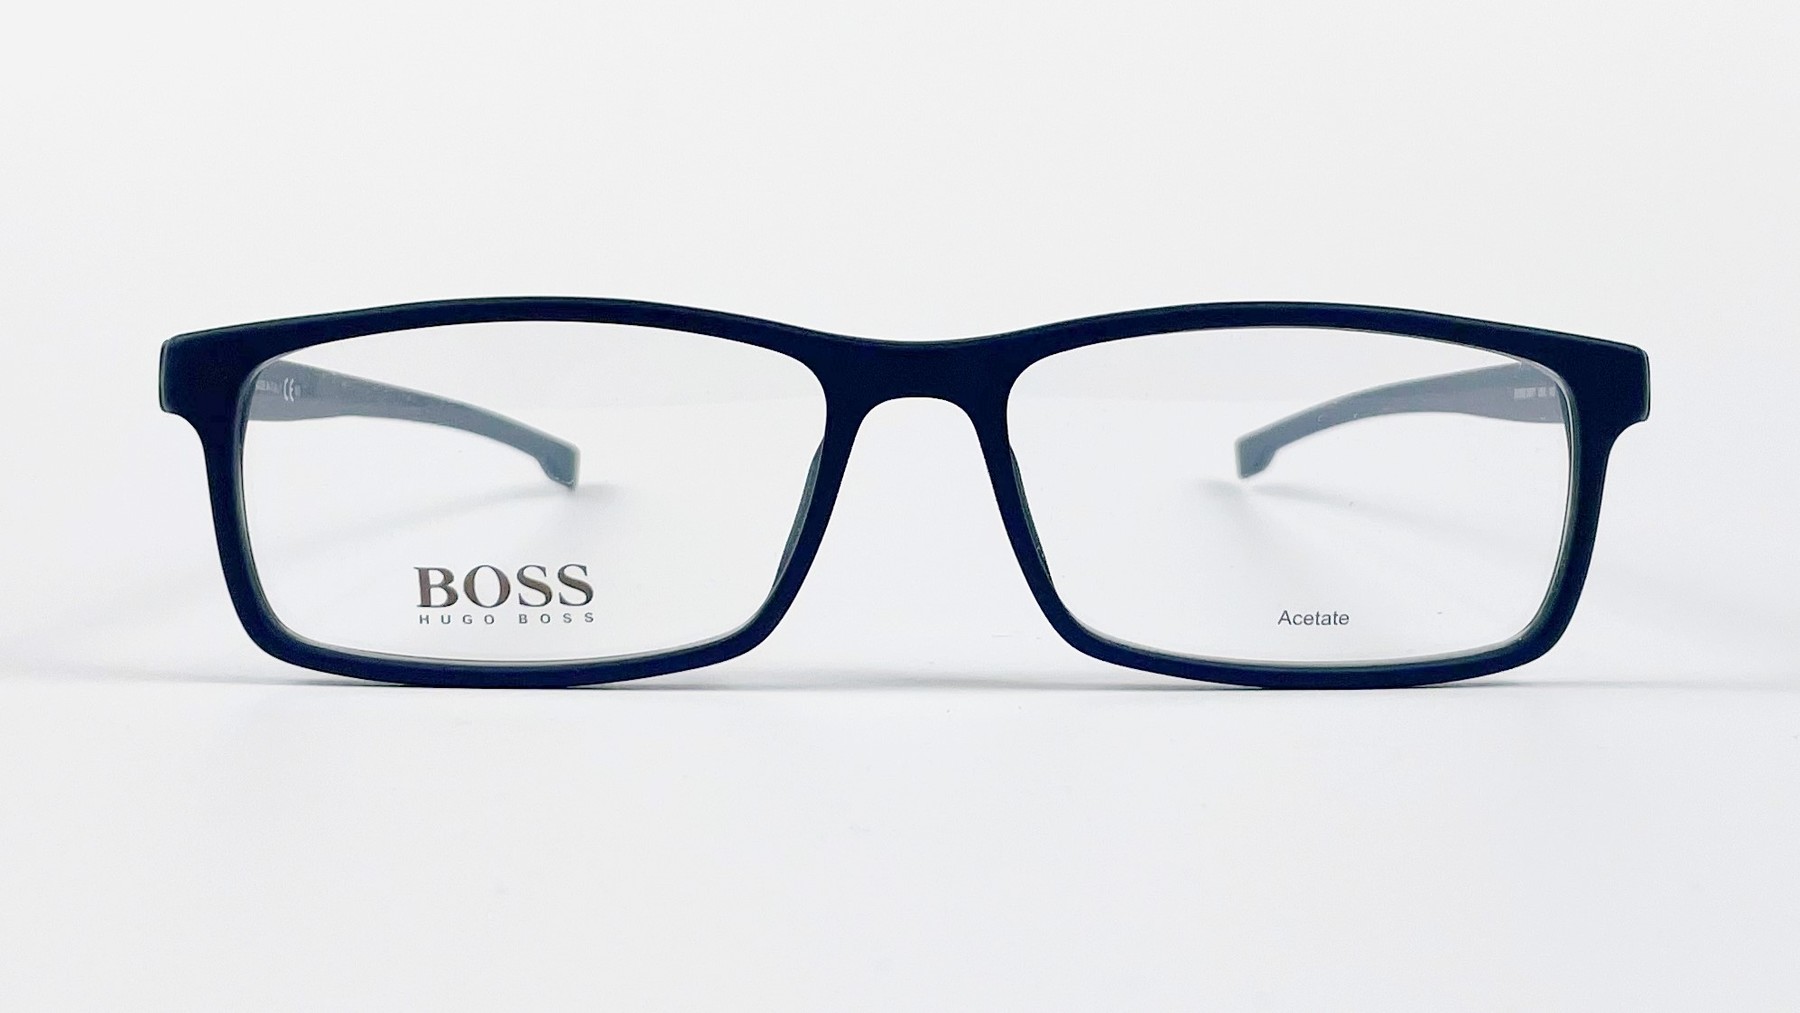 HUGO BOSS 0877 O5X, Korean glasses, sunglasses, eyeglasses, glasses